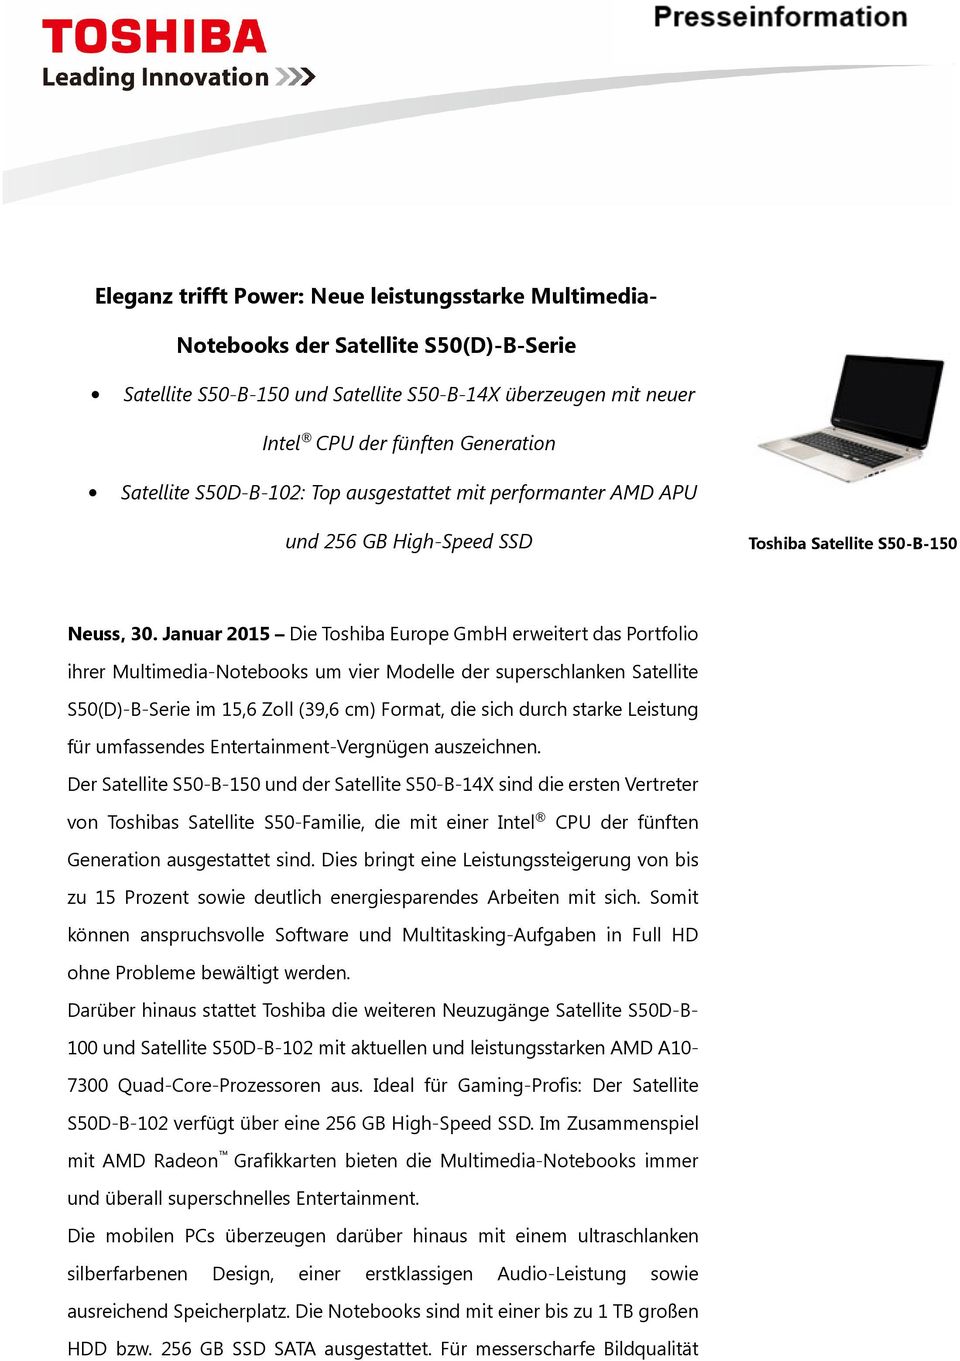 Januar 2015 Die Toshiba Europe GmbH erweitert das Portfolio ihrer Multimedia-Notebooks um vier Modelle der superschlanken Satellite S50(D)-B-Serie im 15,6 Zoll (39,6 cm) Format, die sich durch starke